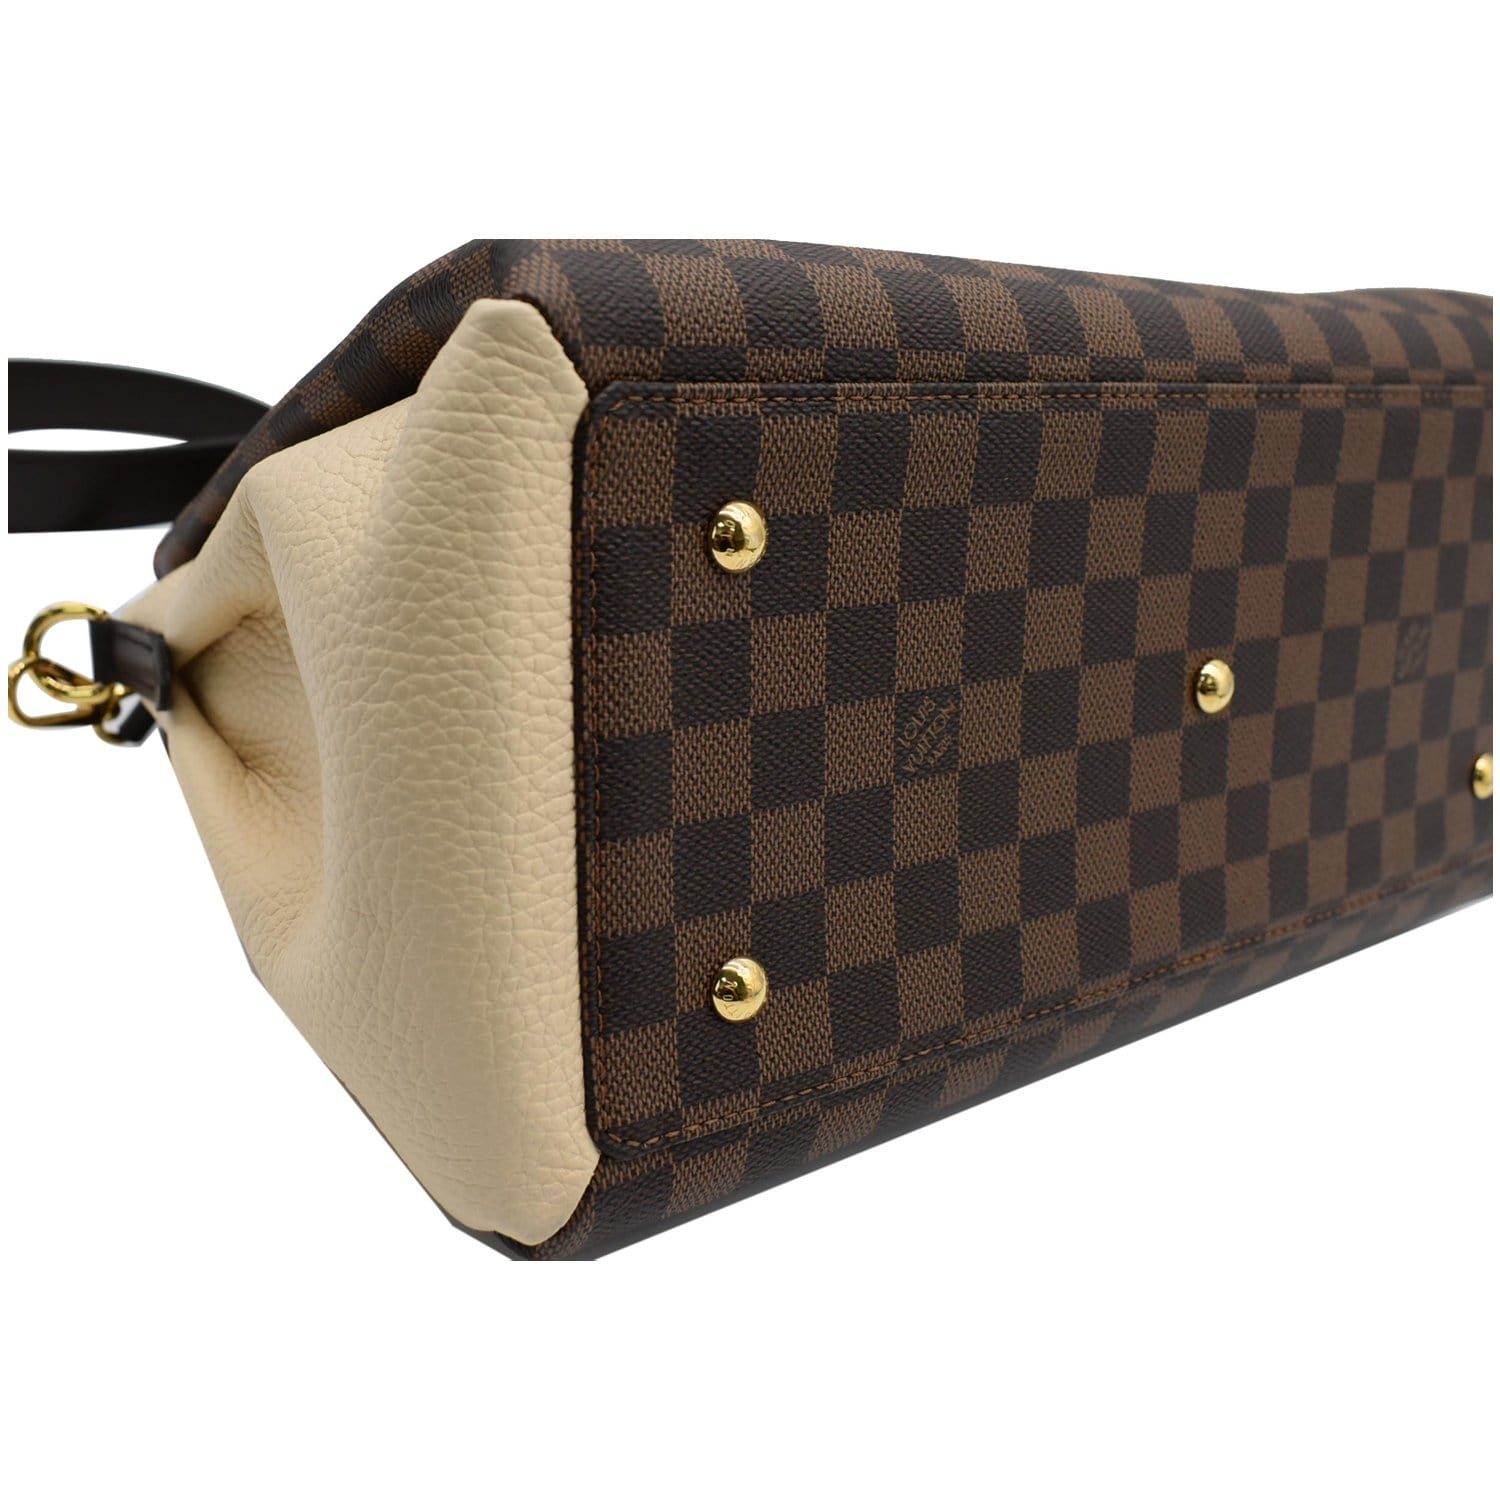 100% Authentic Louis Vuitton Normandy Damier Ebene shoulder bag A+